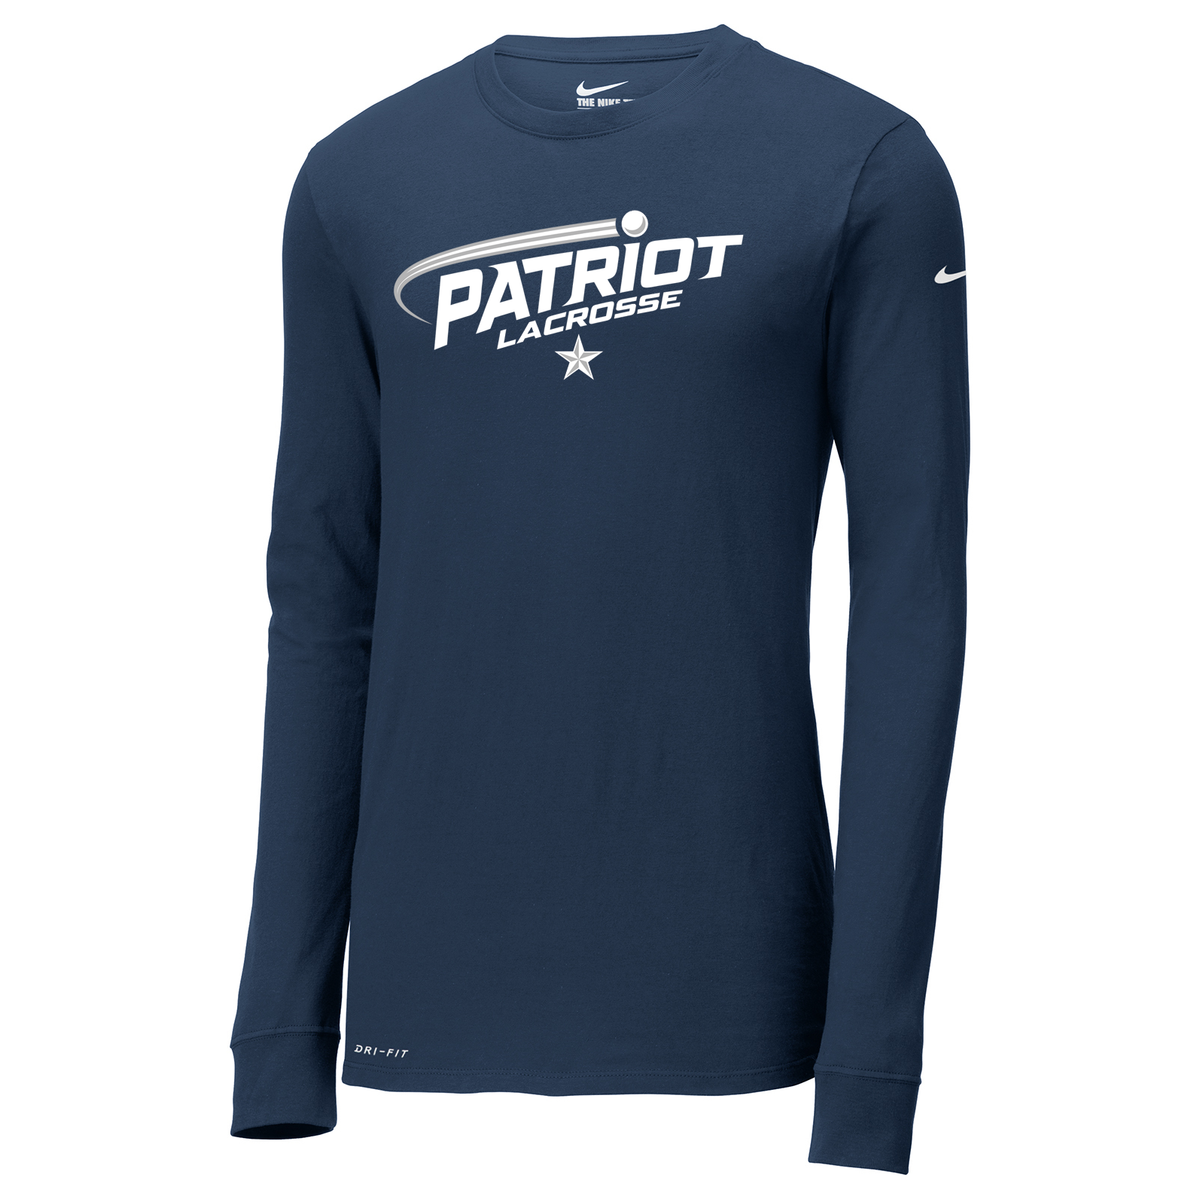 Patriot Lacrosse Nike Dri-FIT Long Sleeve Tee